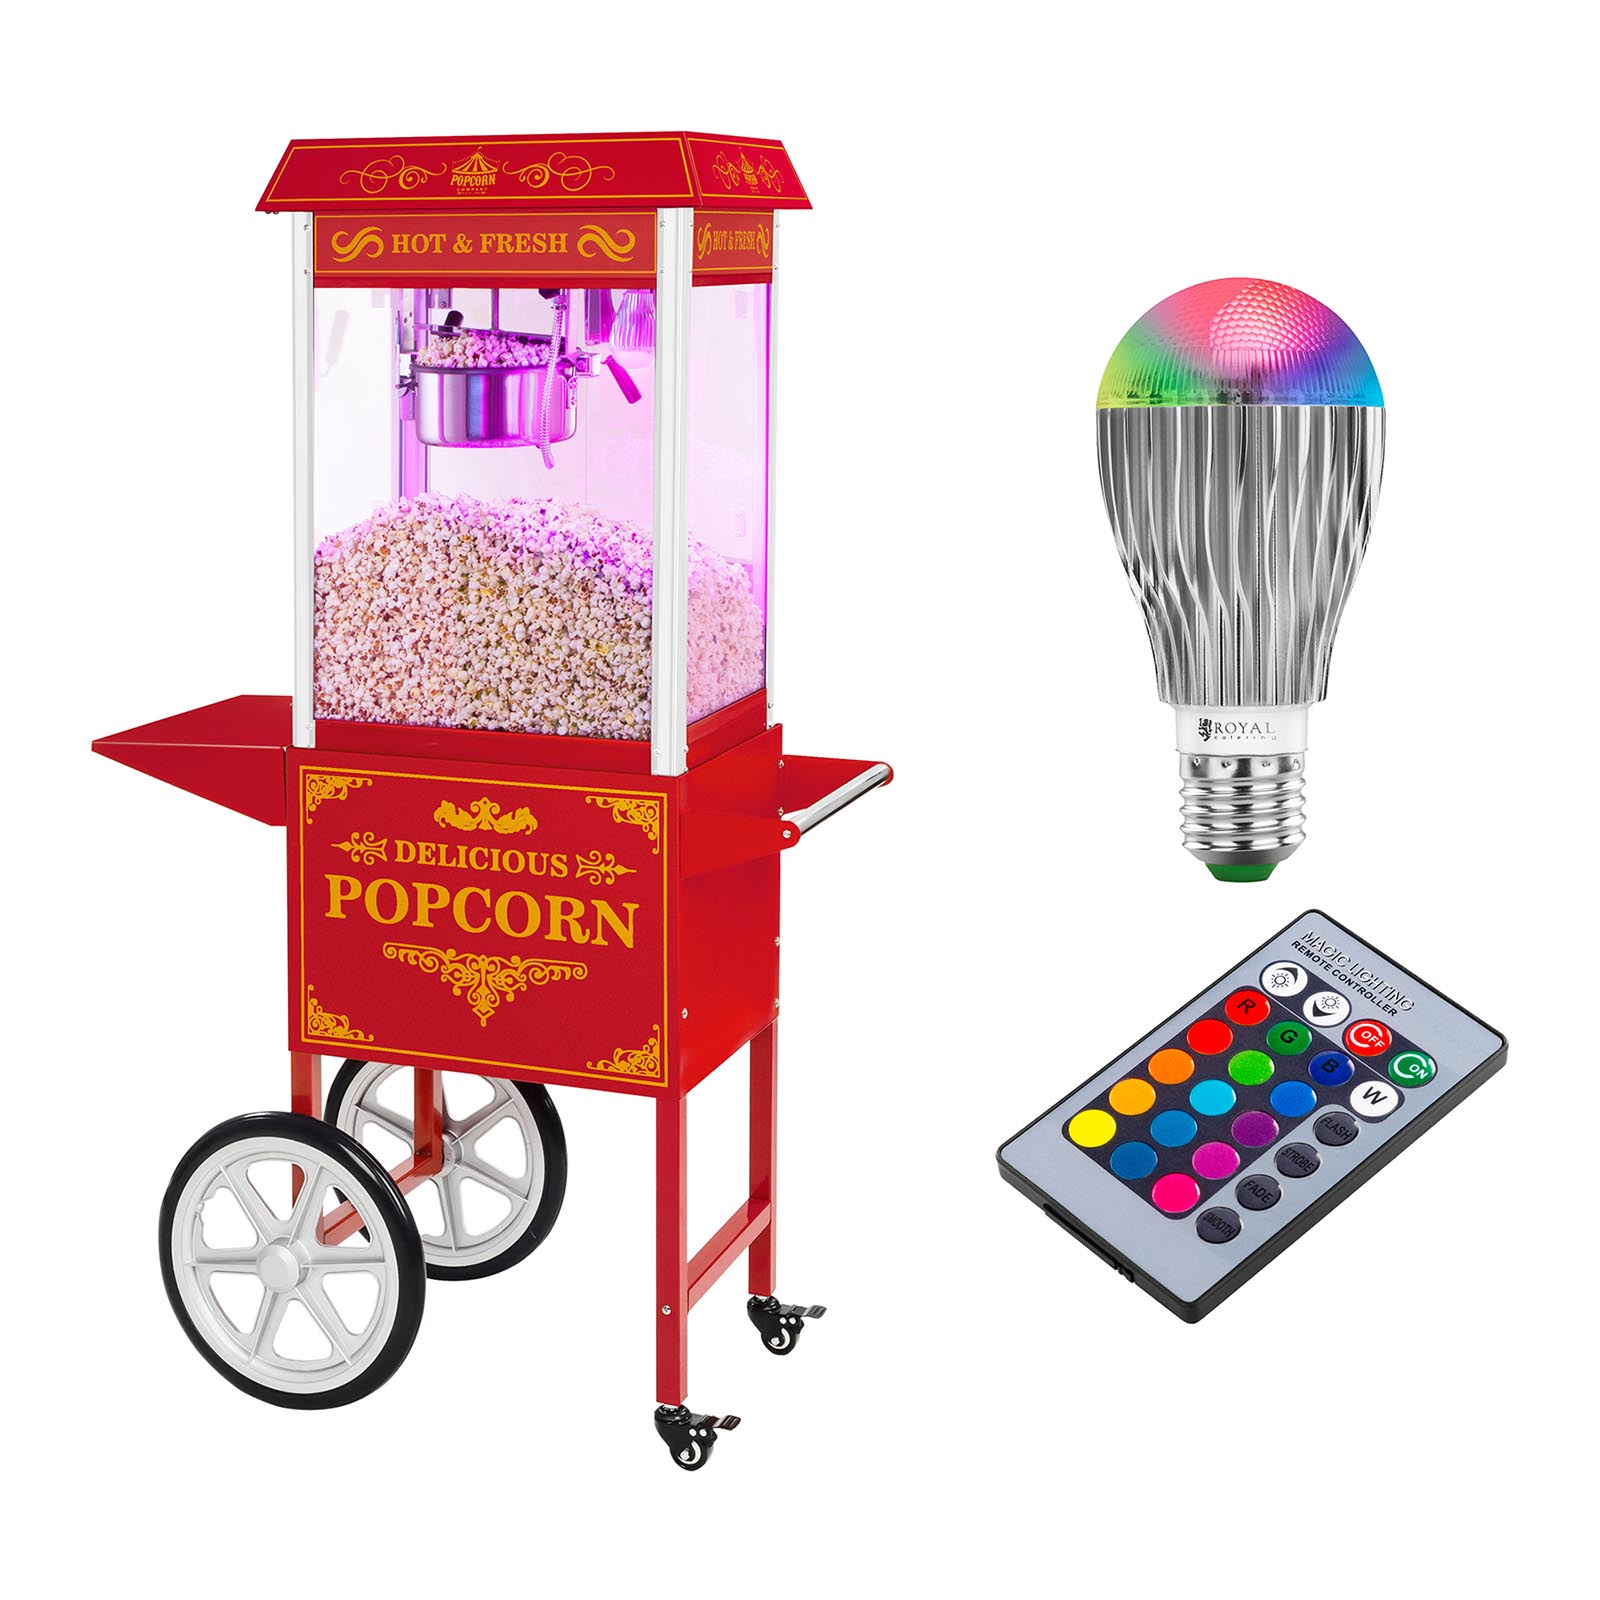 Popcorn készítő gép kocsival és LED világítással - Retro-Design - piros